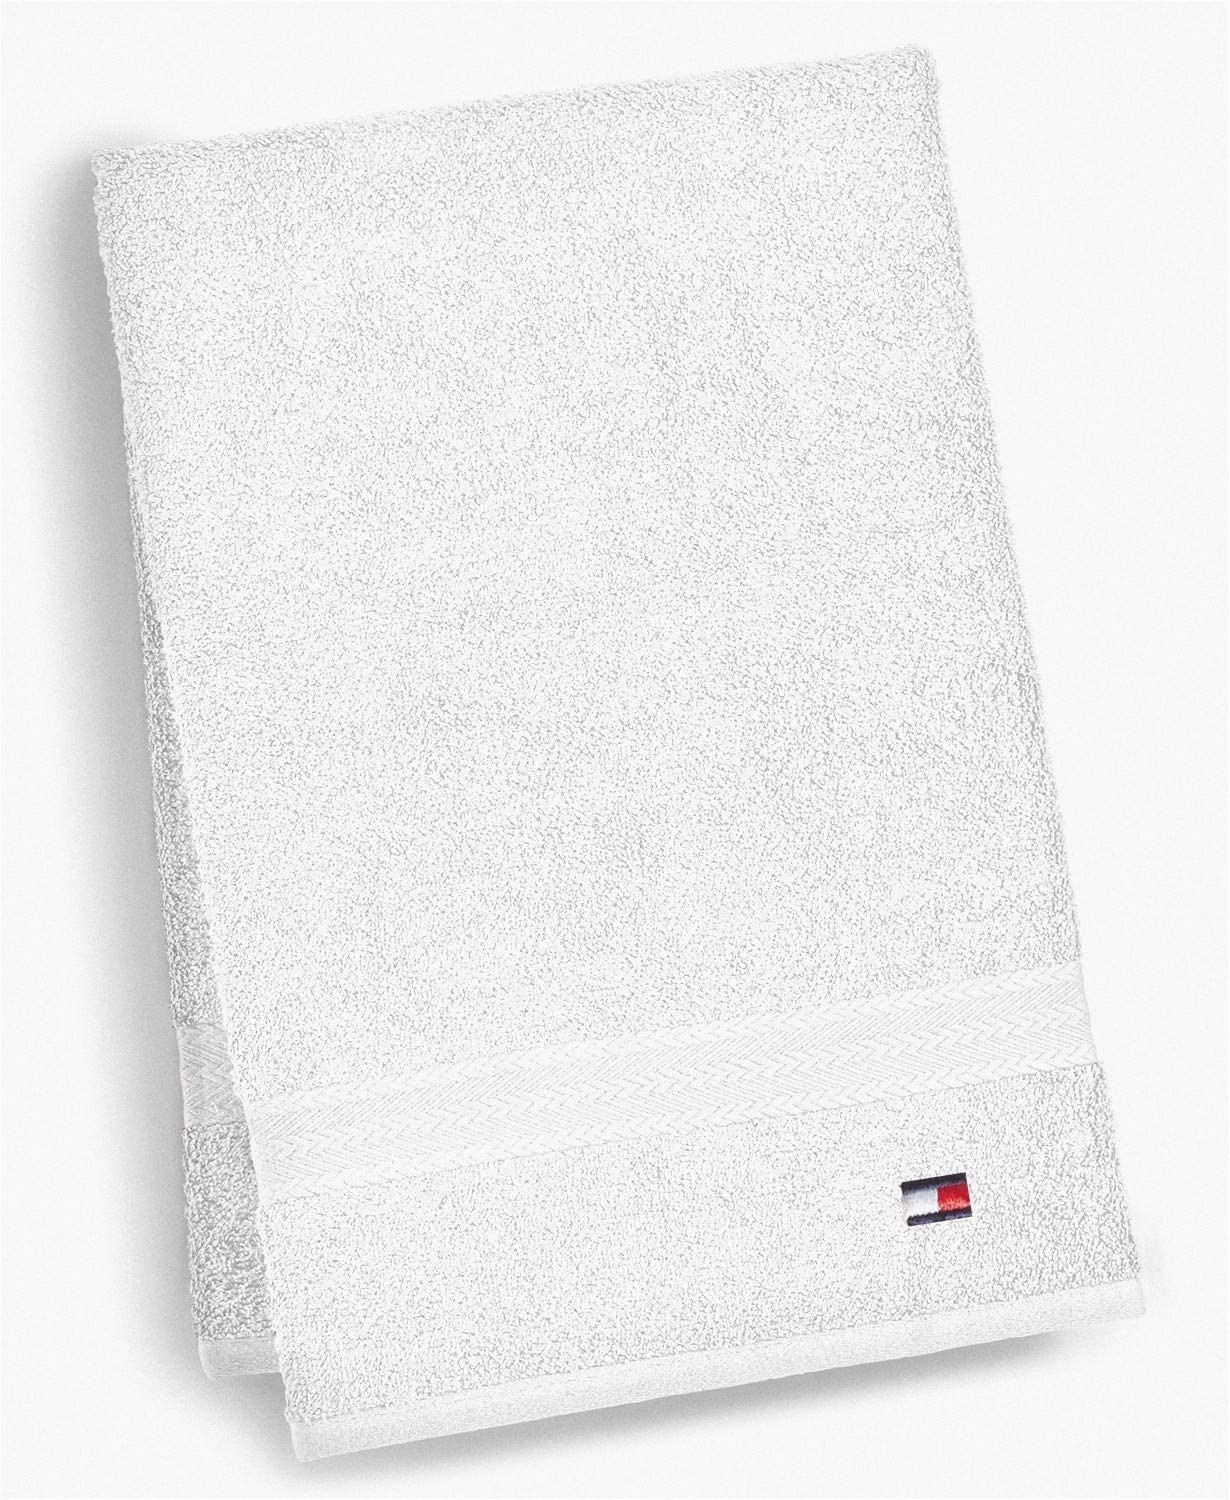 Tommy Hilfiger White Bath Rug tommy Hilfiger All American Ii Bath towel 27 X 52 Inch White